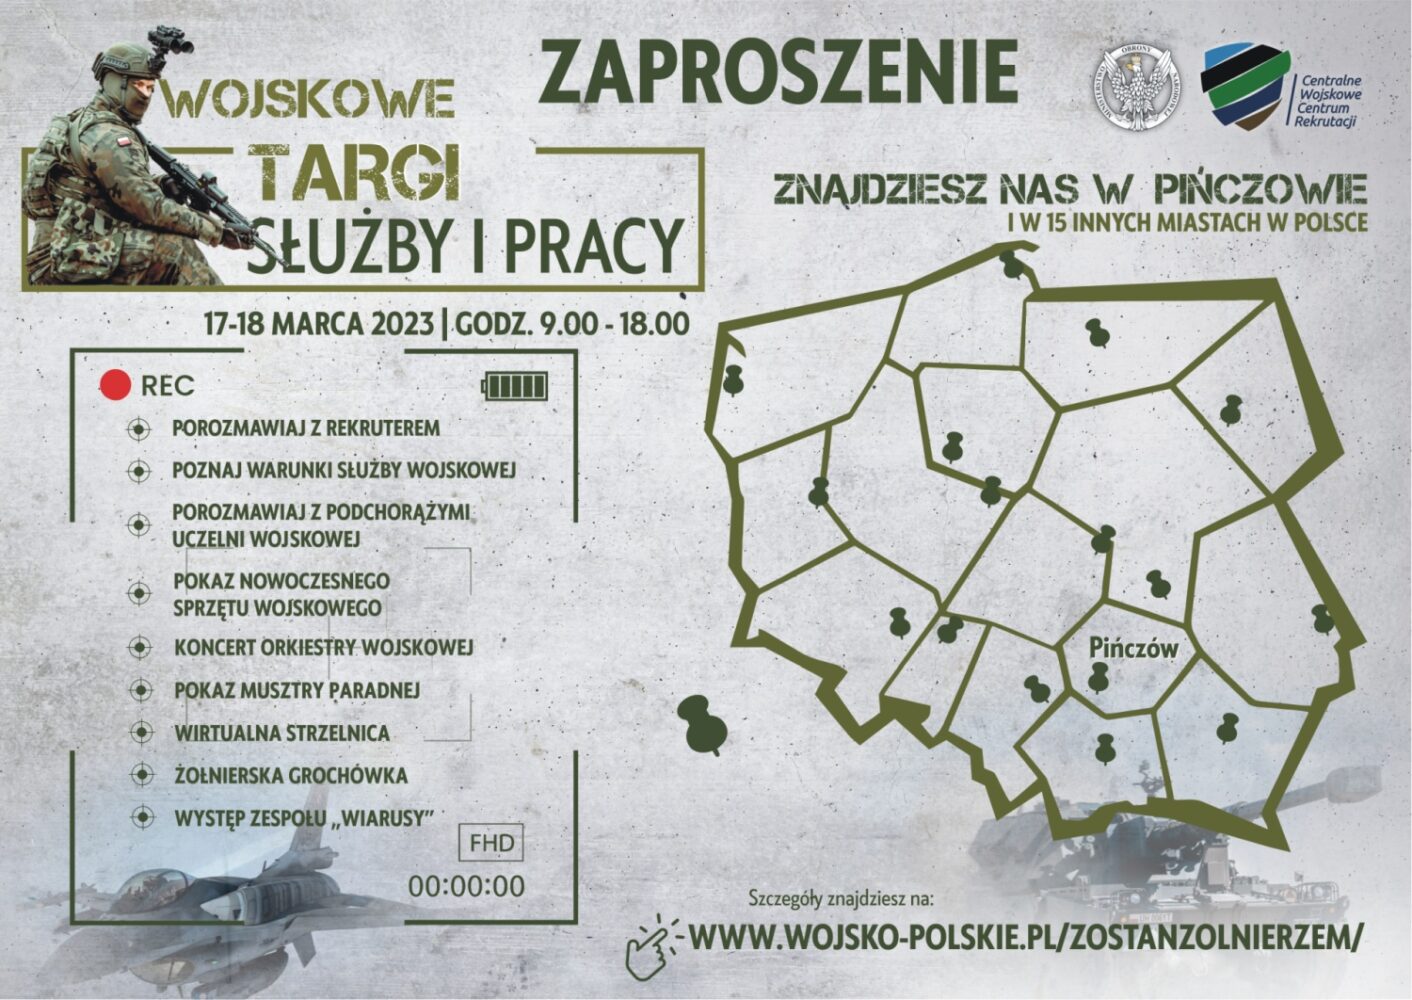 Zaproszenie na Wojskowe Targi Służby i Pracy, 17-18 marca 2023, Pińczów